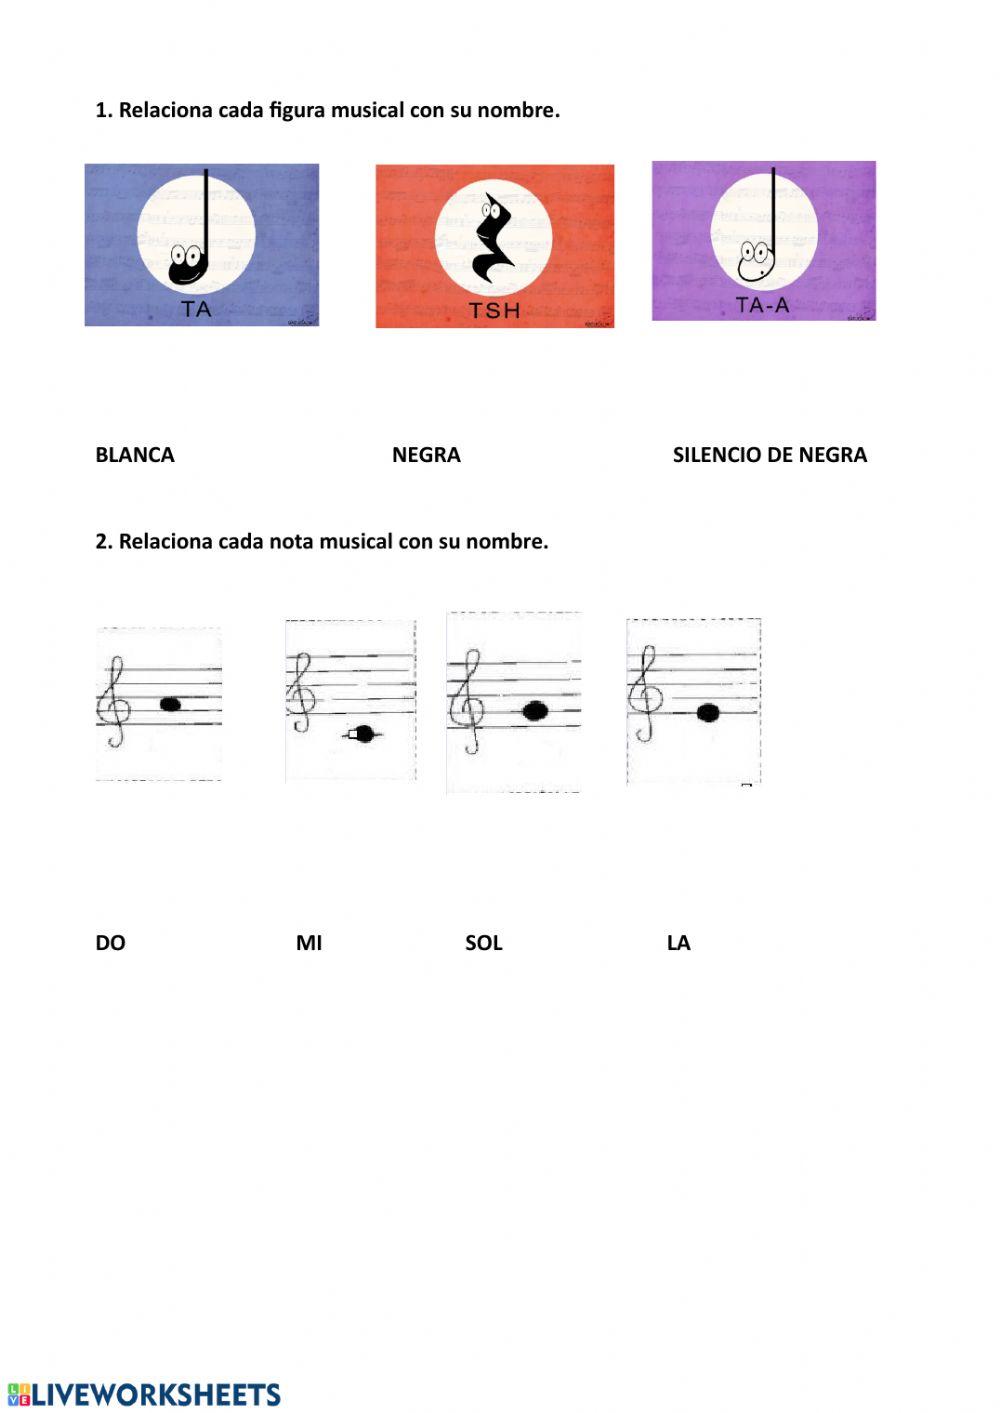 Figuras y notas musicales